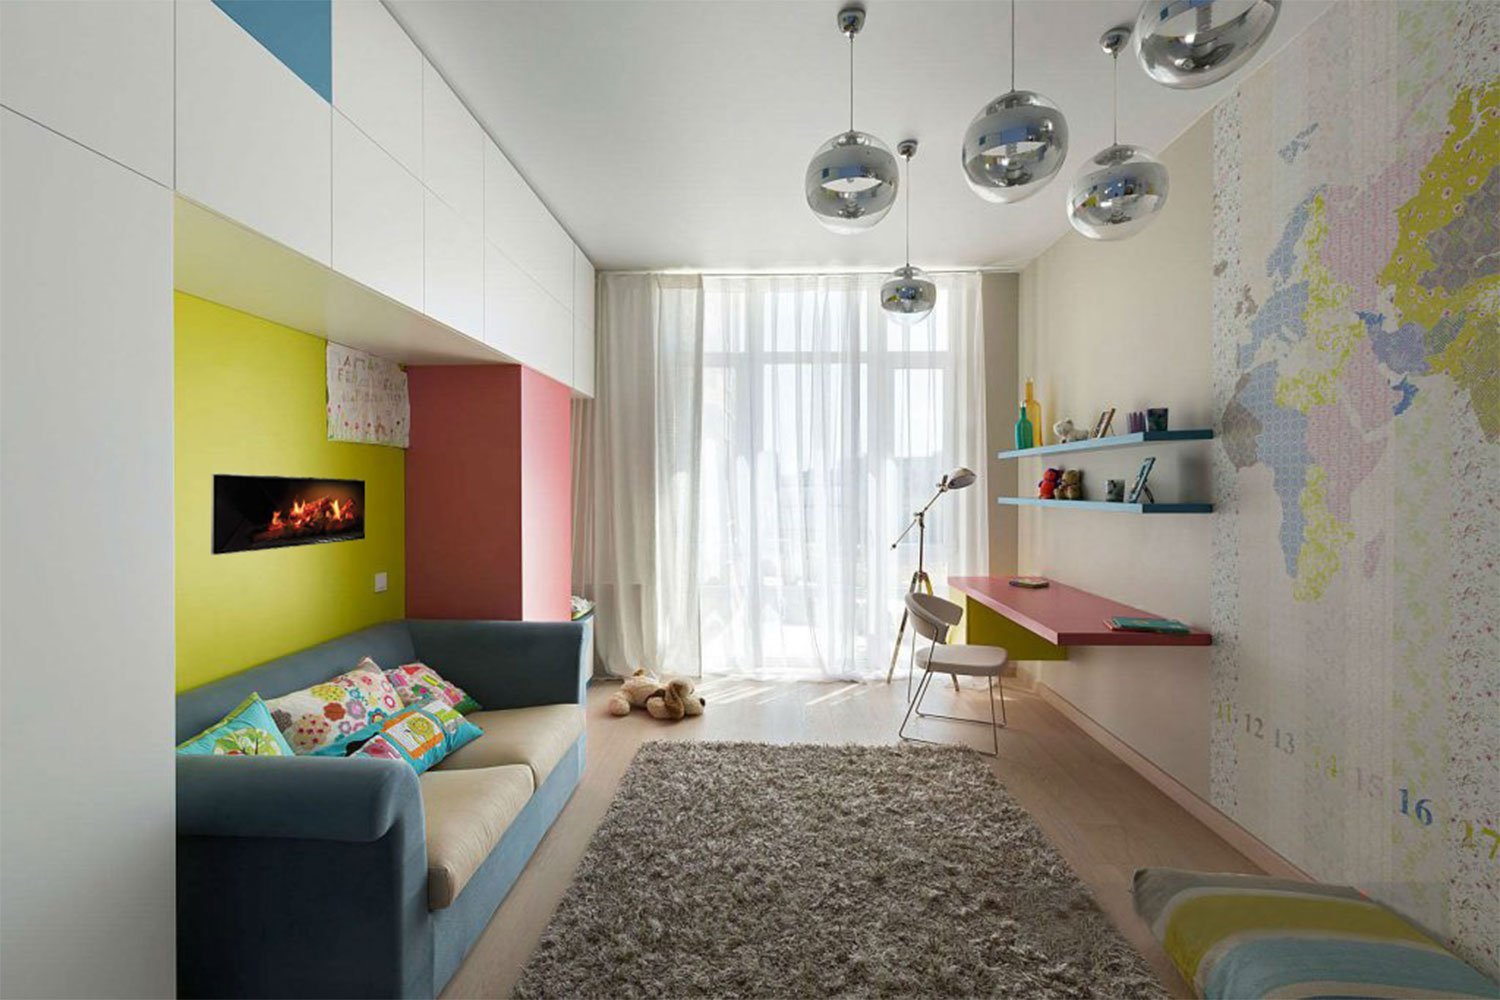 Дизайн интерьера узкой длинной комнаты – правило оформления дизайна вытянутого помещения.